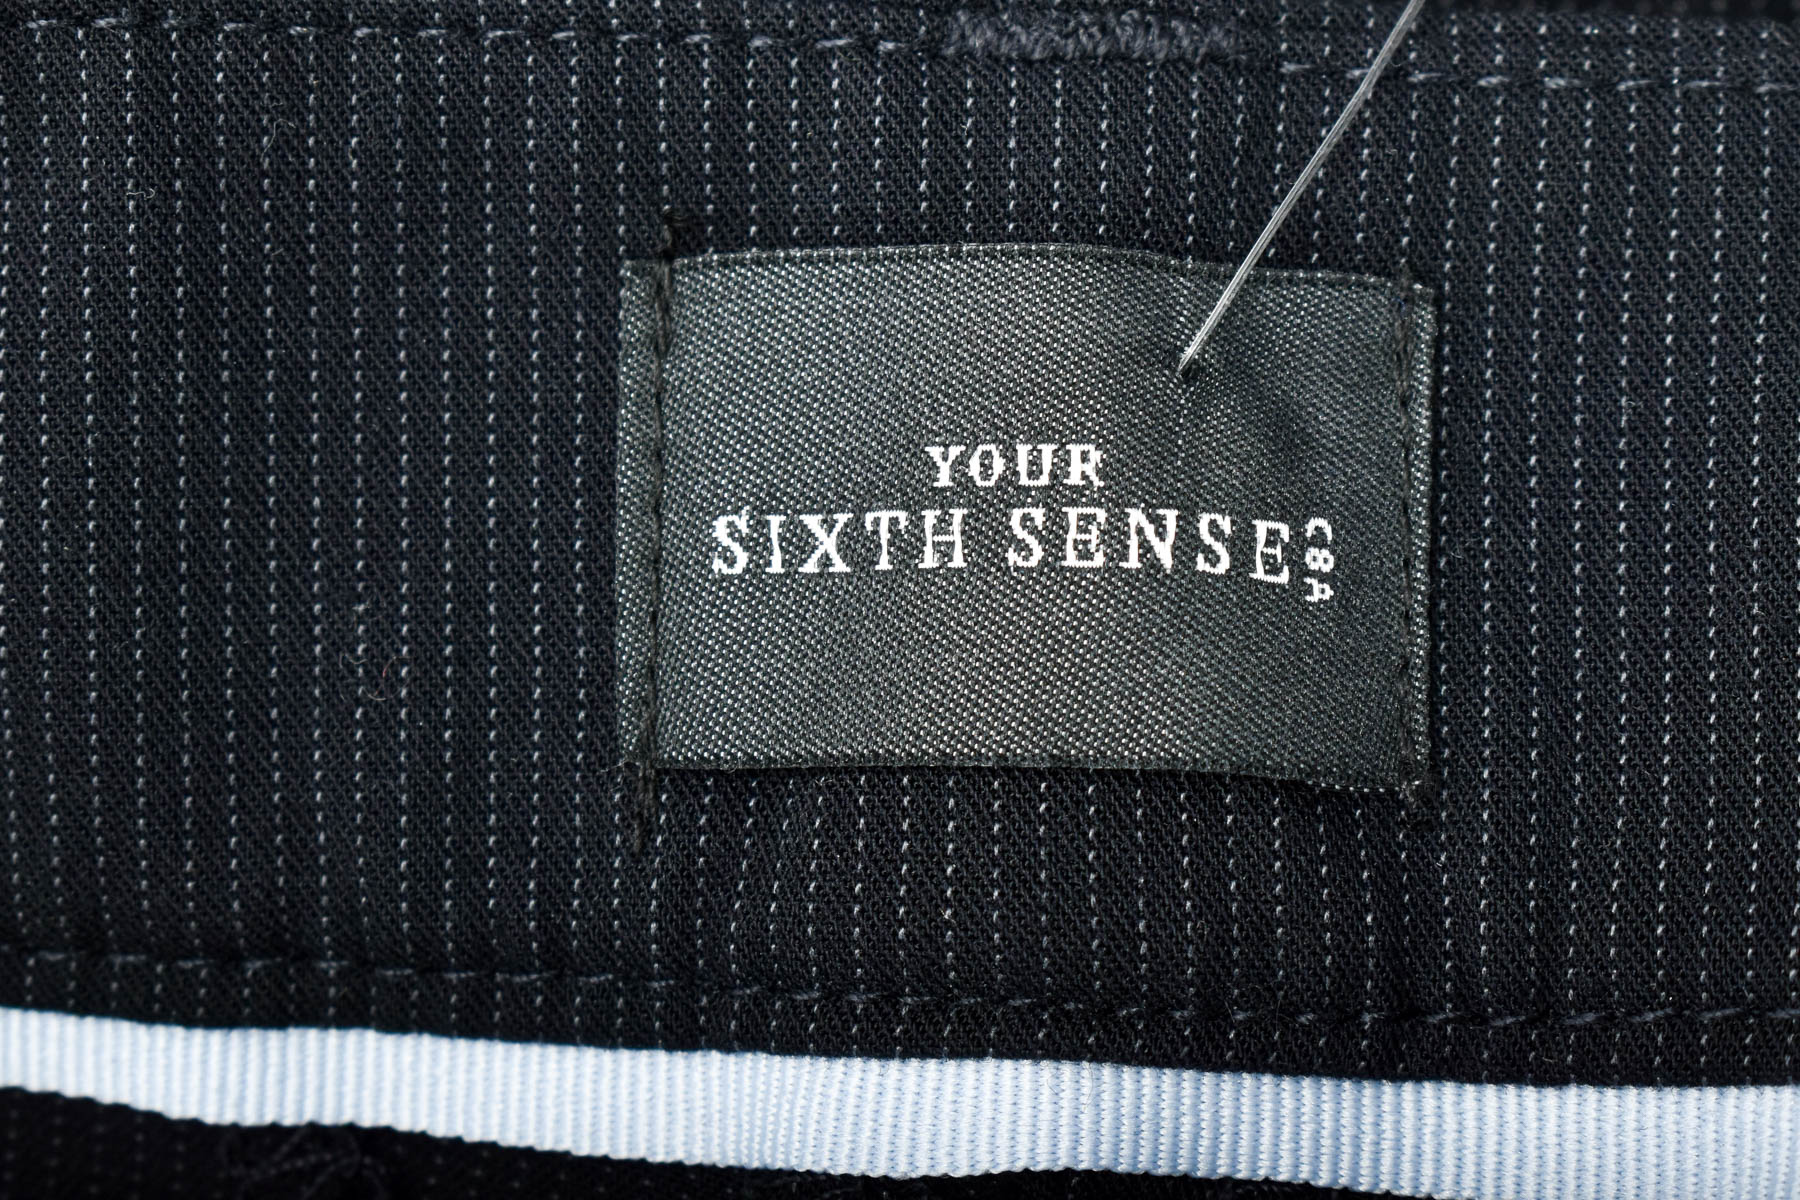 Γυναικεία παντελόνια - Your Sixth Sense - 2